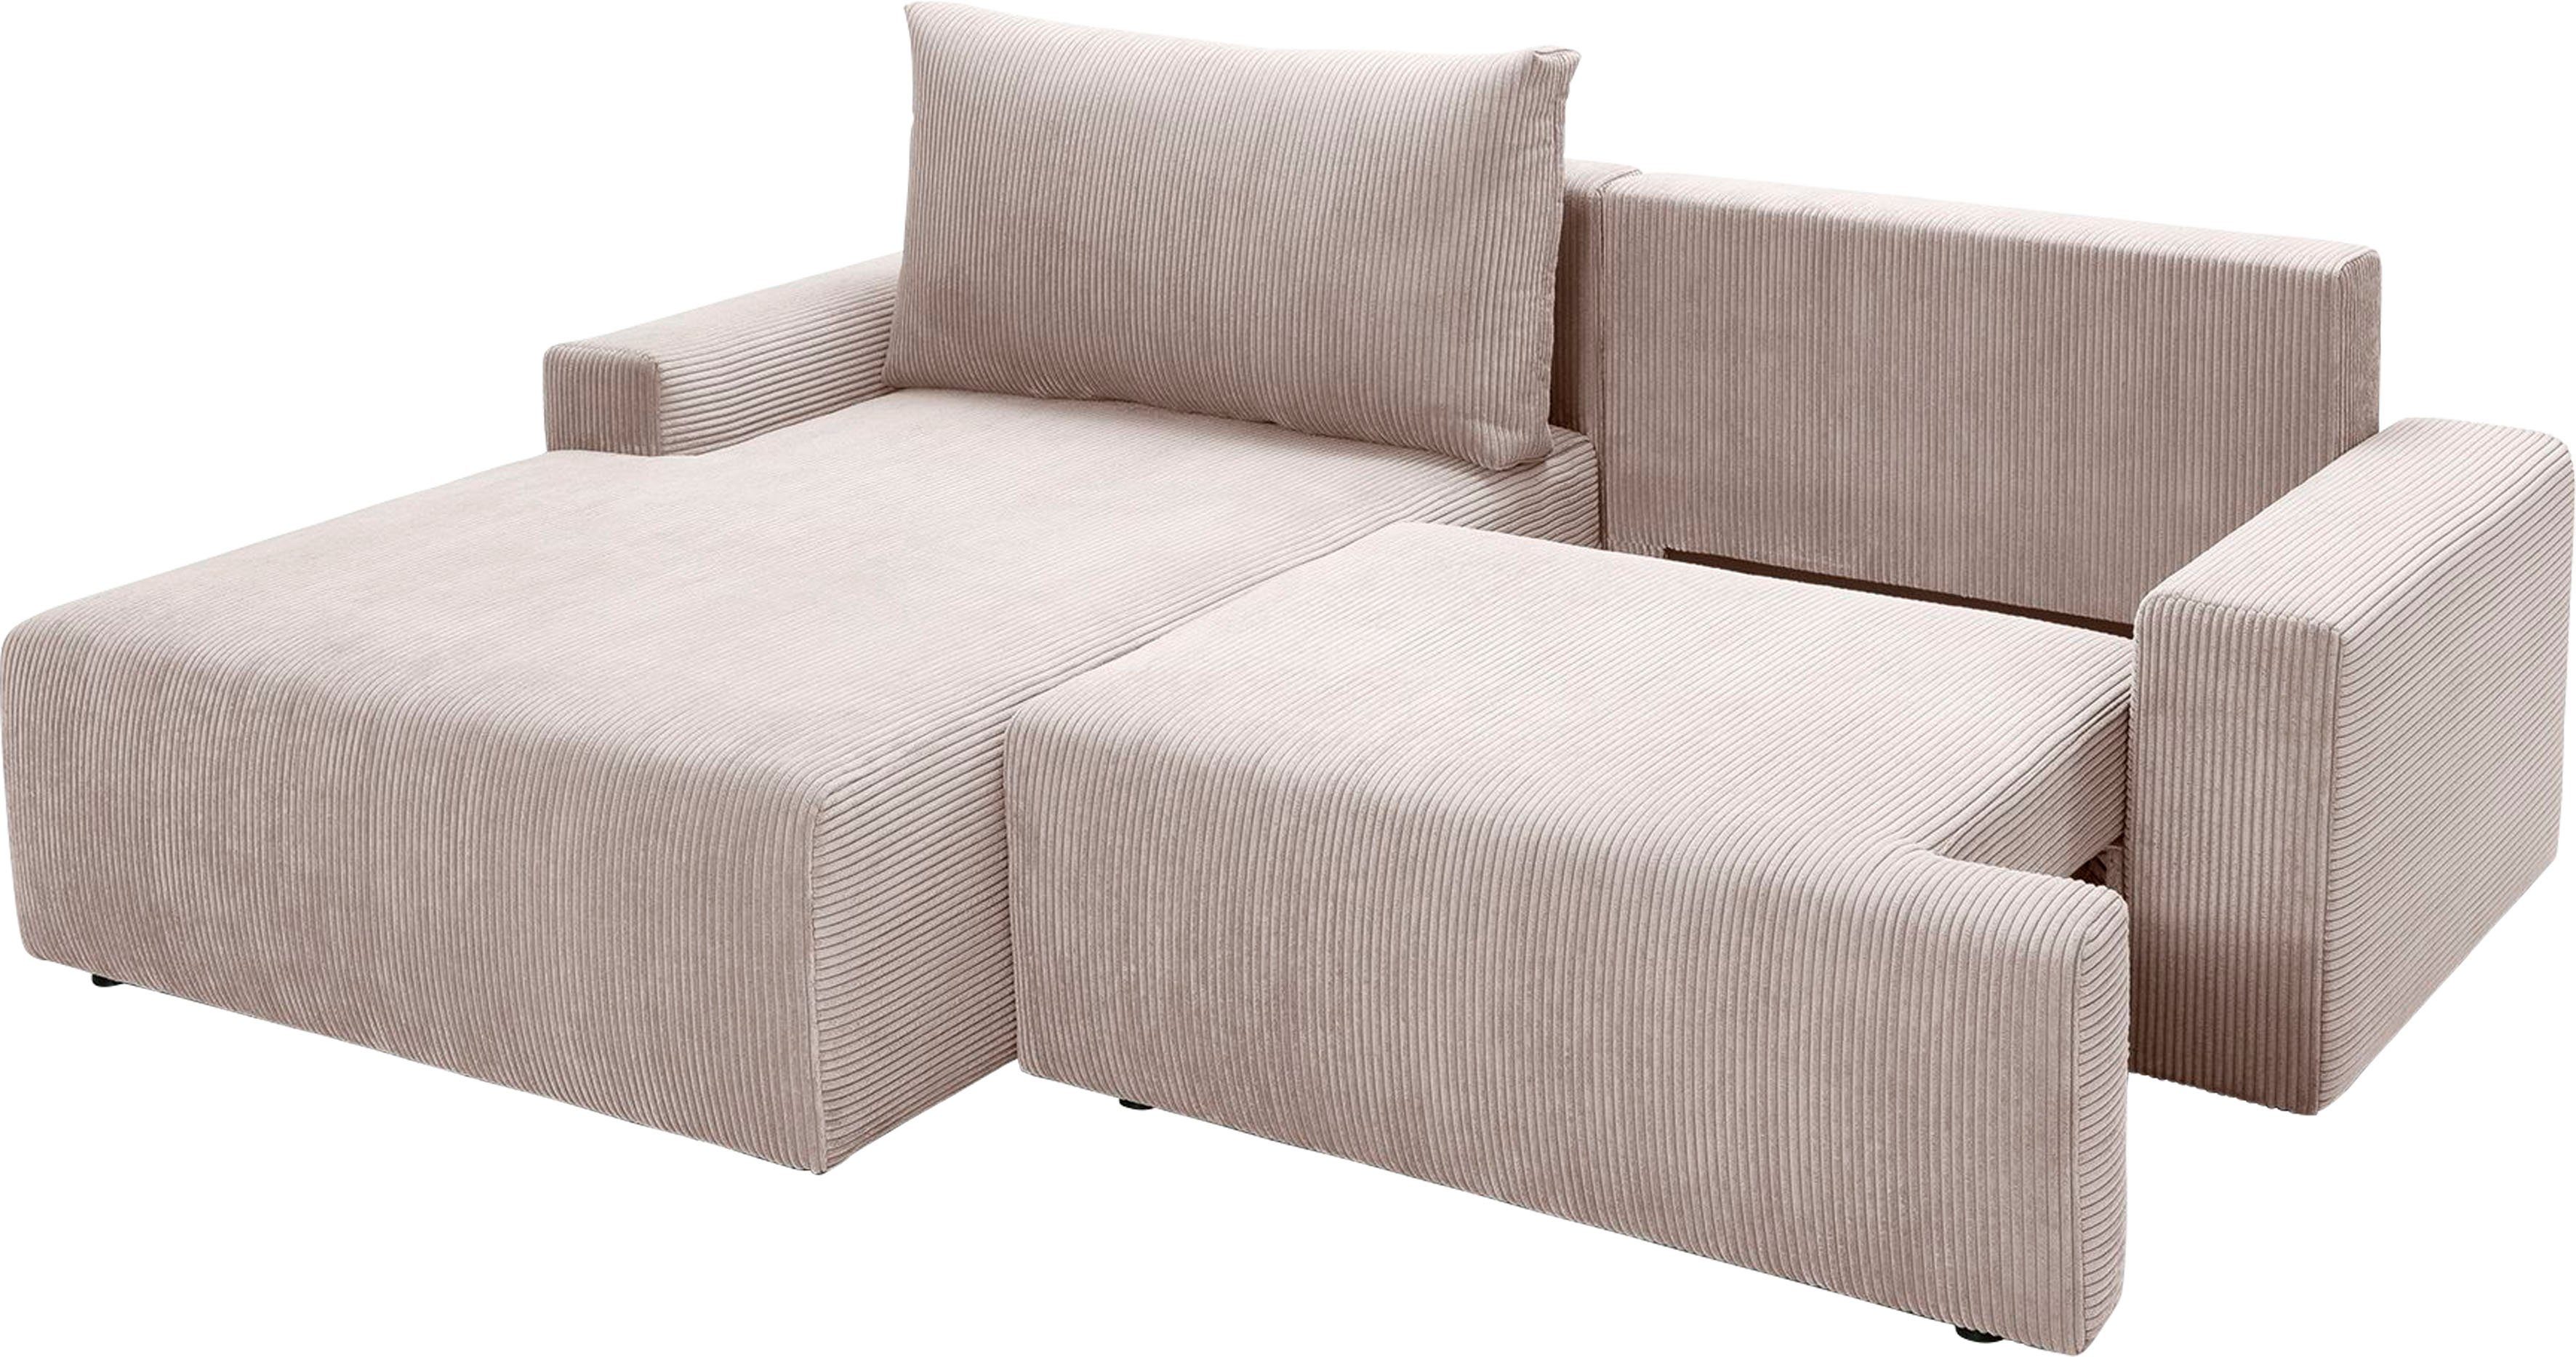 sofa fashion beige - Bettfunktion in Cord-Farben Bettkasten verschiedenen exxpo Ecksofa Orinoko, und inklusive